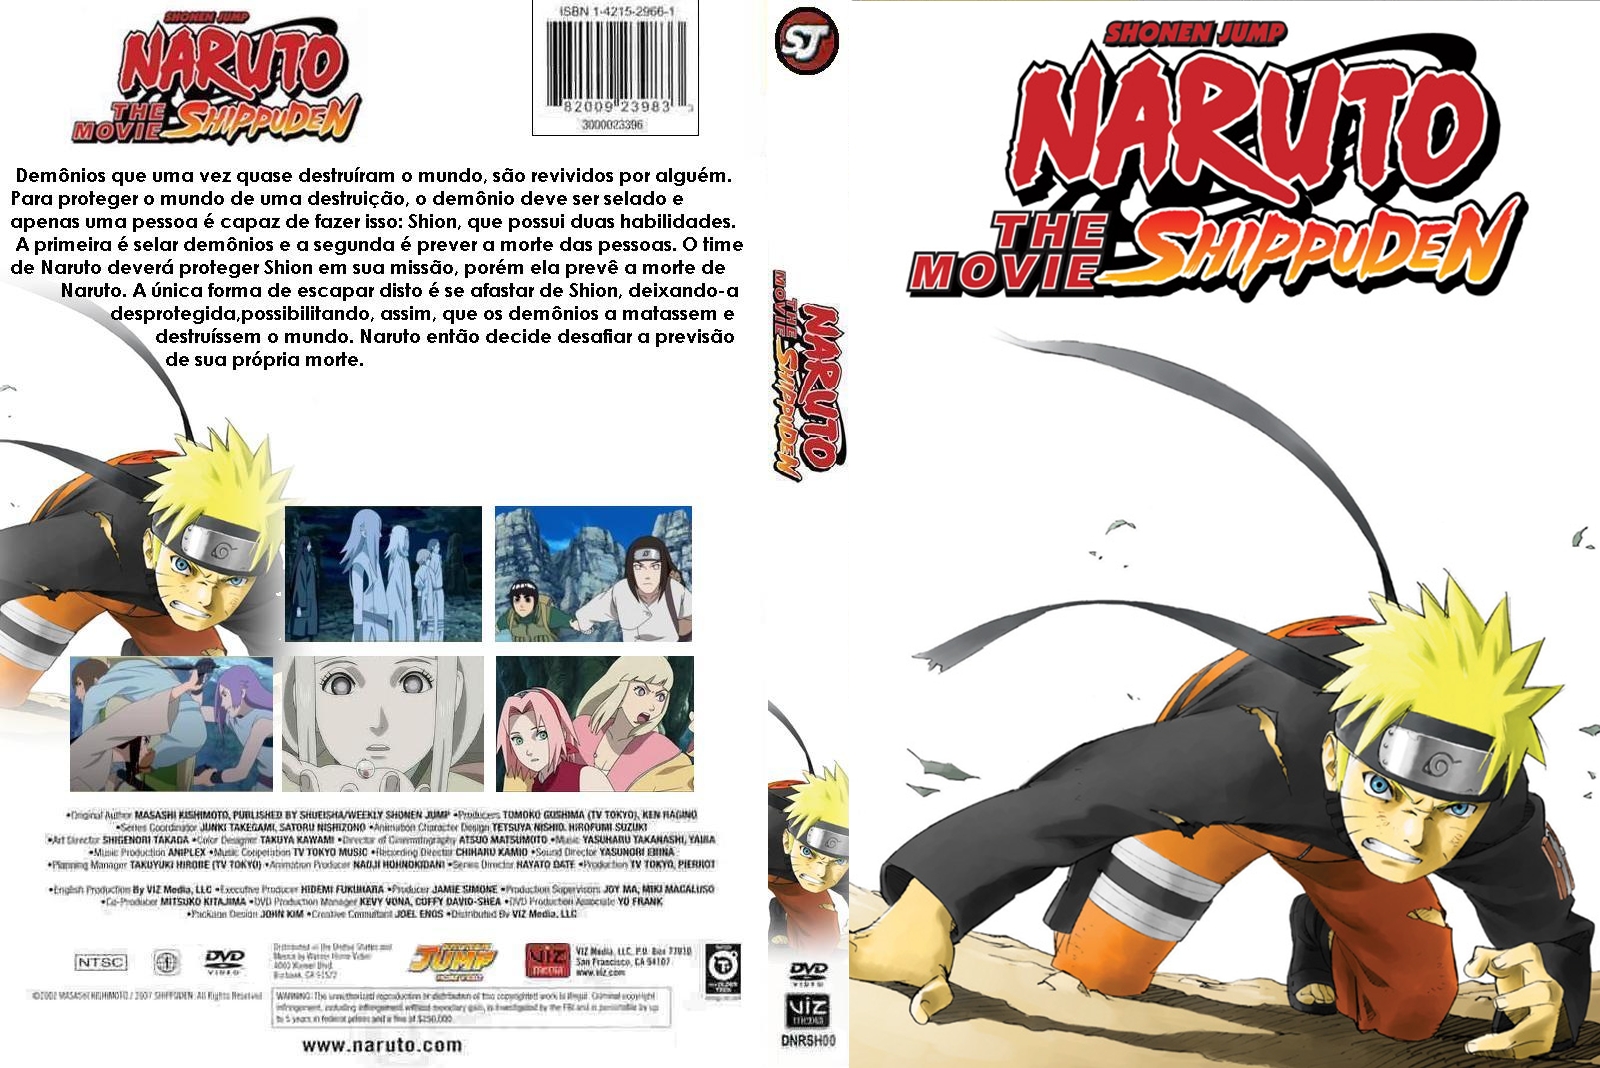 Naruto Shippuden MOVIE 5 8 English Dubbed Naruto the